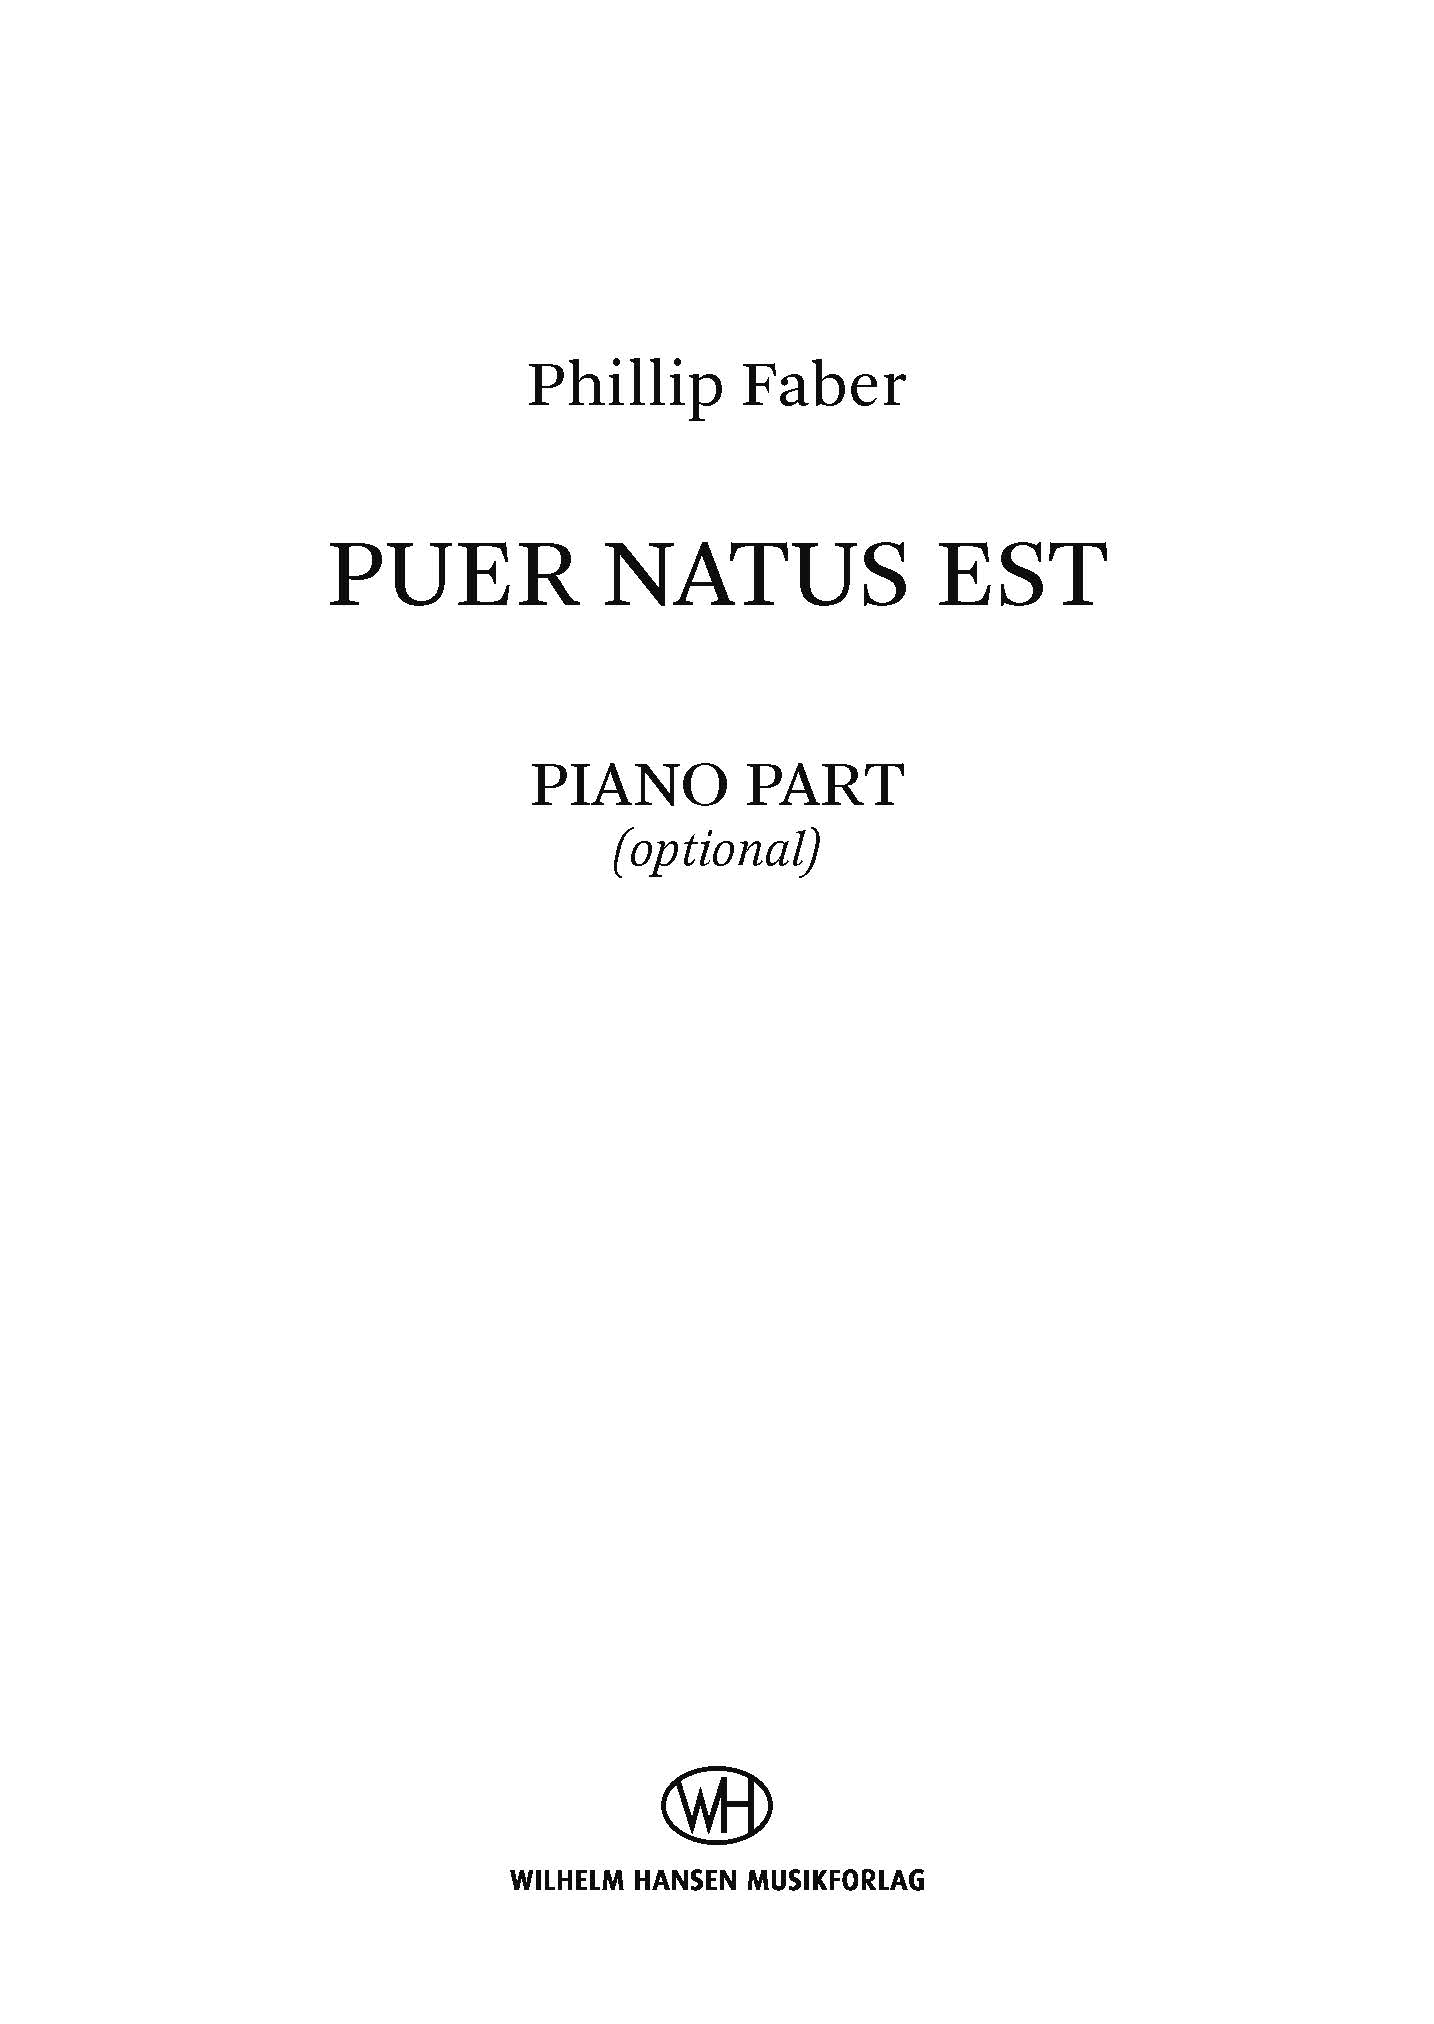 Phillip Faber: Puer natus est: SSAA: Part